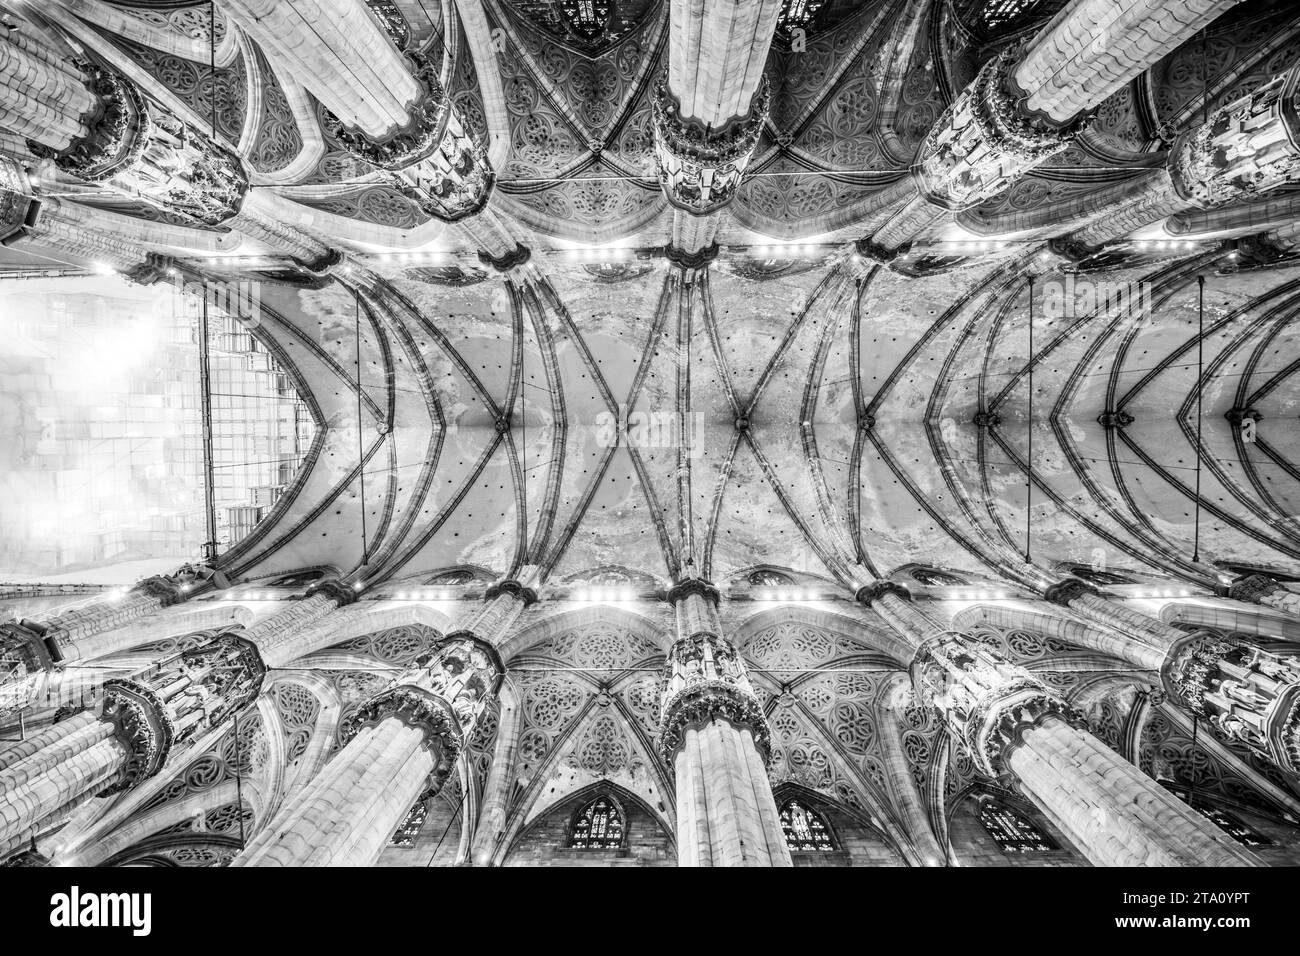 Inneres der Metropolitan Cathedral-Basilika der Geburt der Heiligen Maria, alias Duomo, Mailand, Italien. Schwarzweiß-Fotografie. Stockfoto